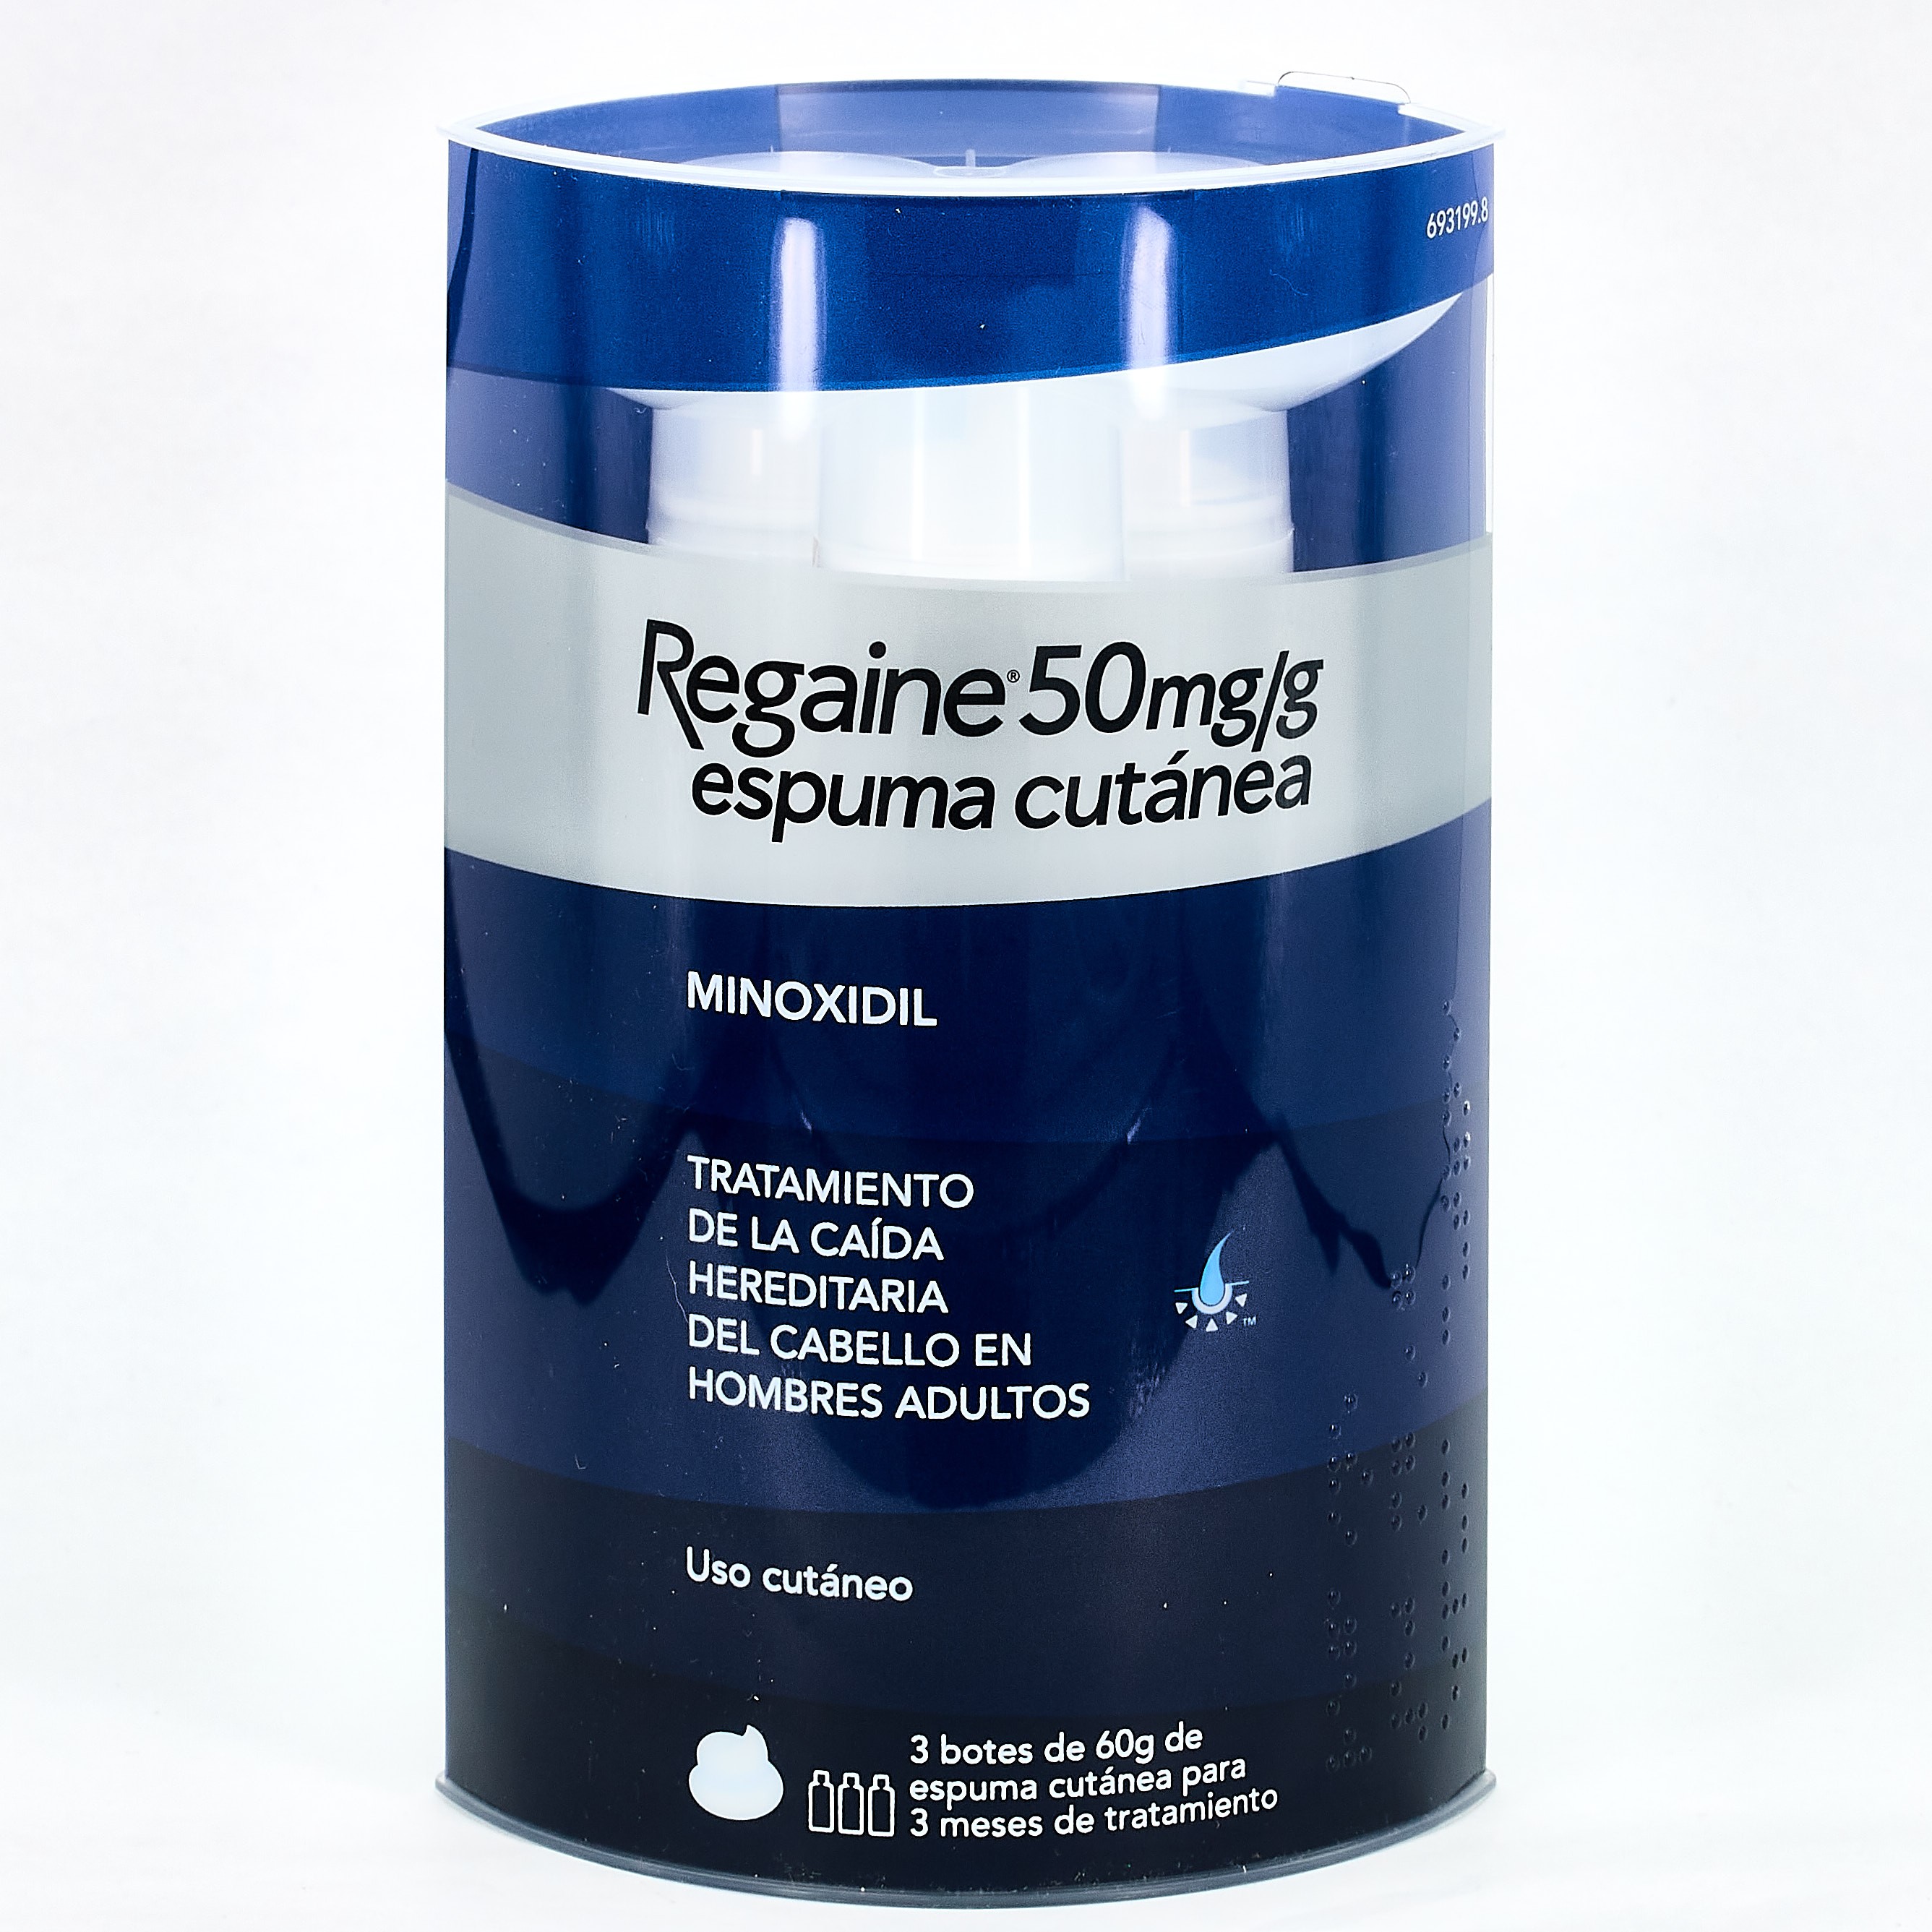 Regaine Minoxidil espuma 50mg/g. 3x60g